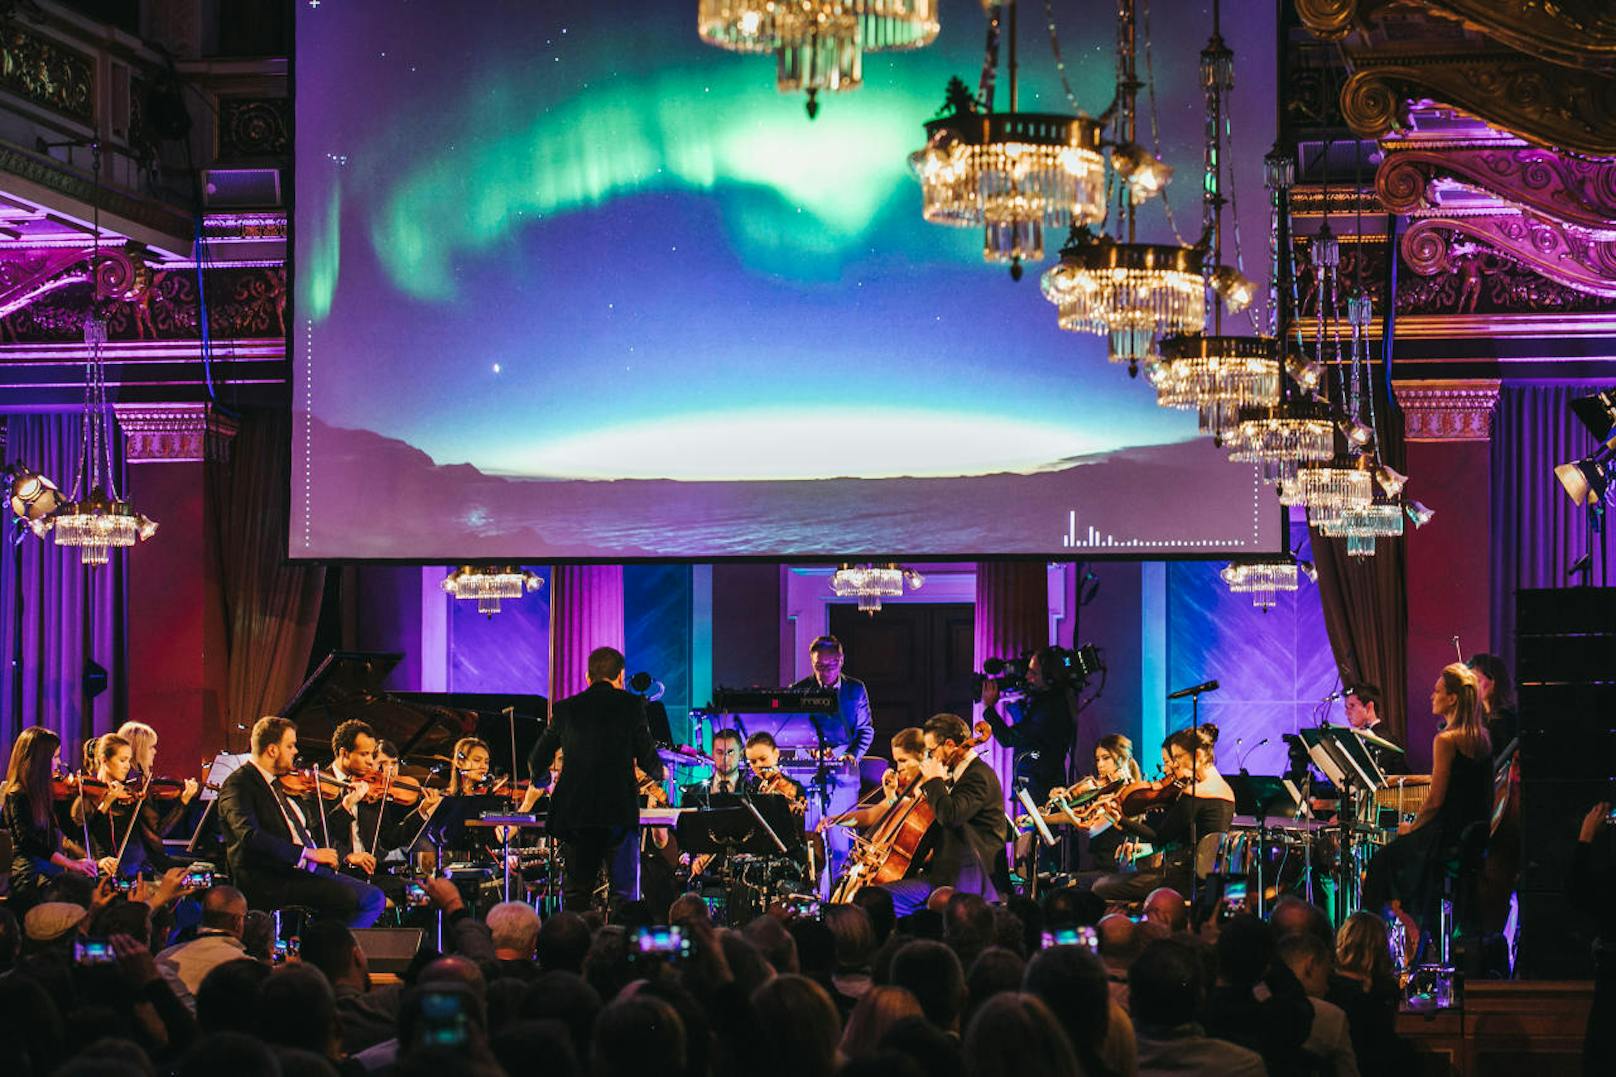 Mit der Frage "Wie klingen die Nordlichter?" begann die audio-visuelle KI-gesteuerte Live-Performance im Brahmssaal des Wiener Musikvereins.